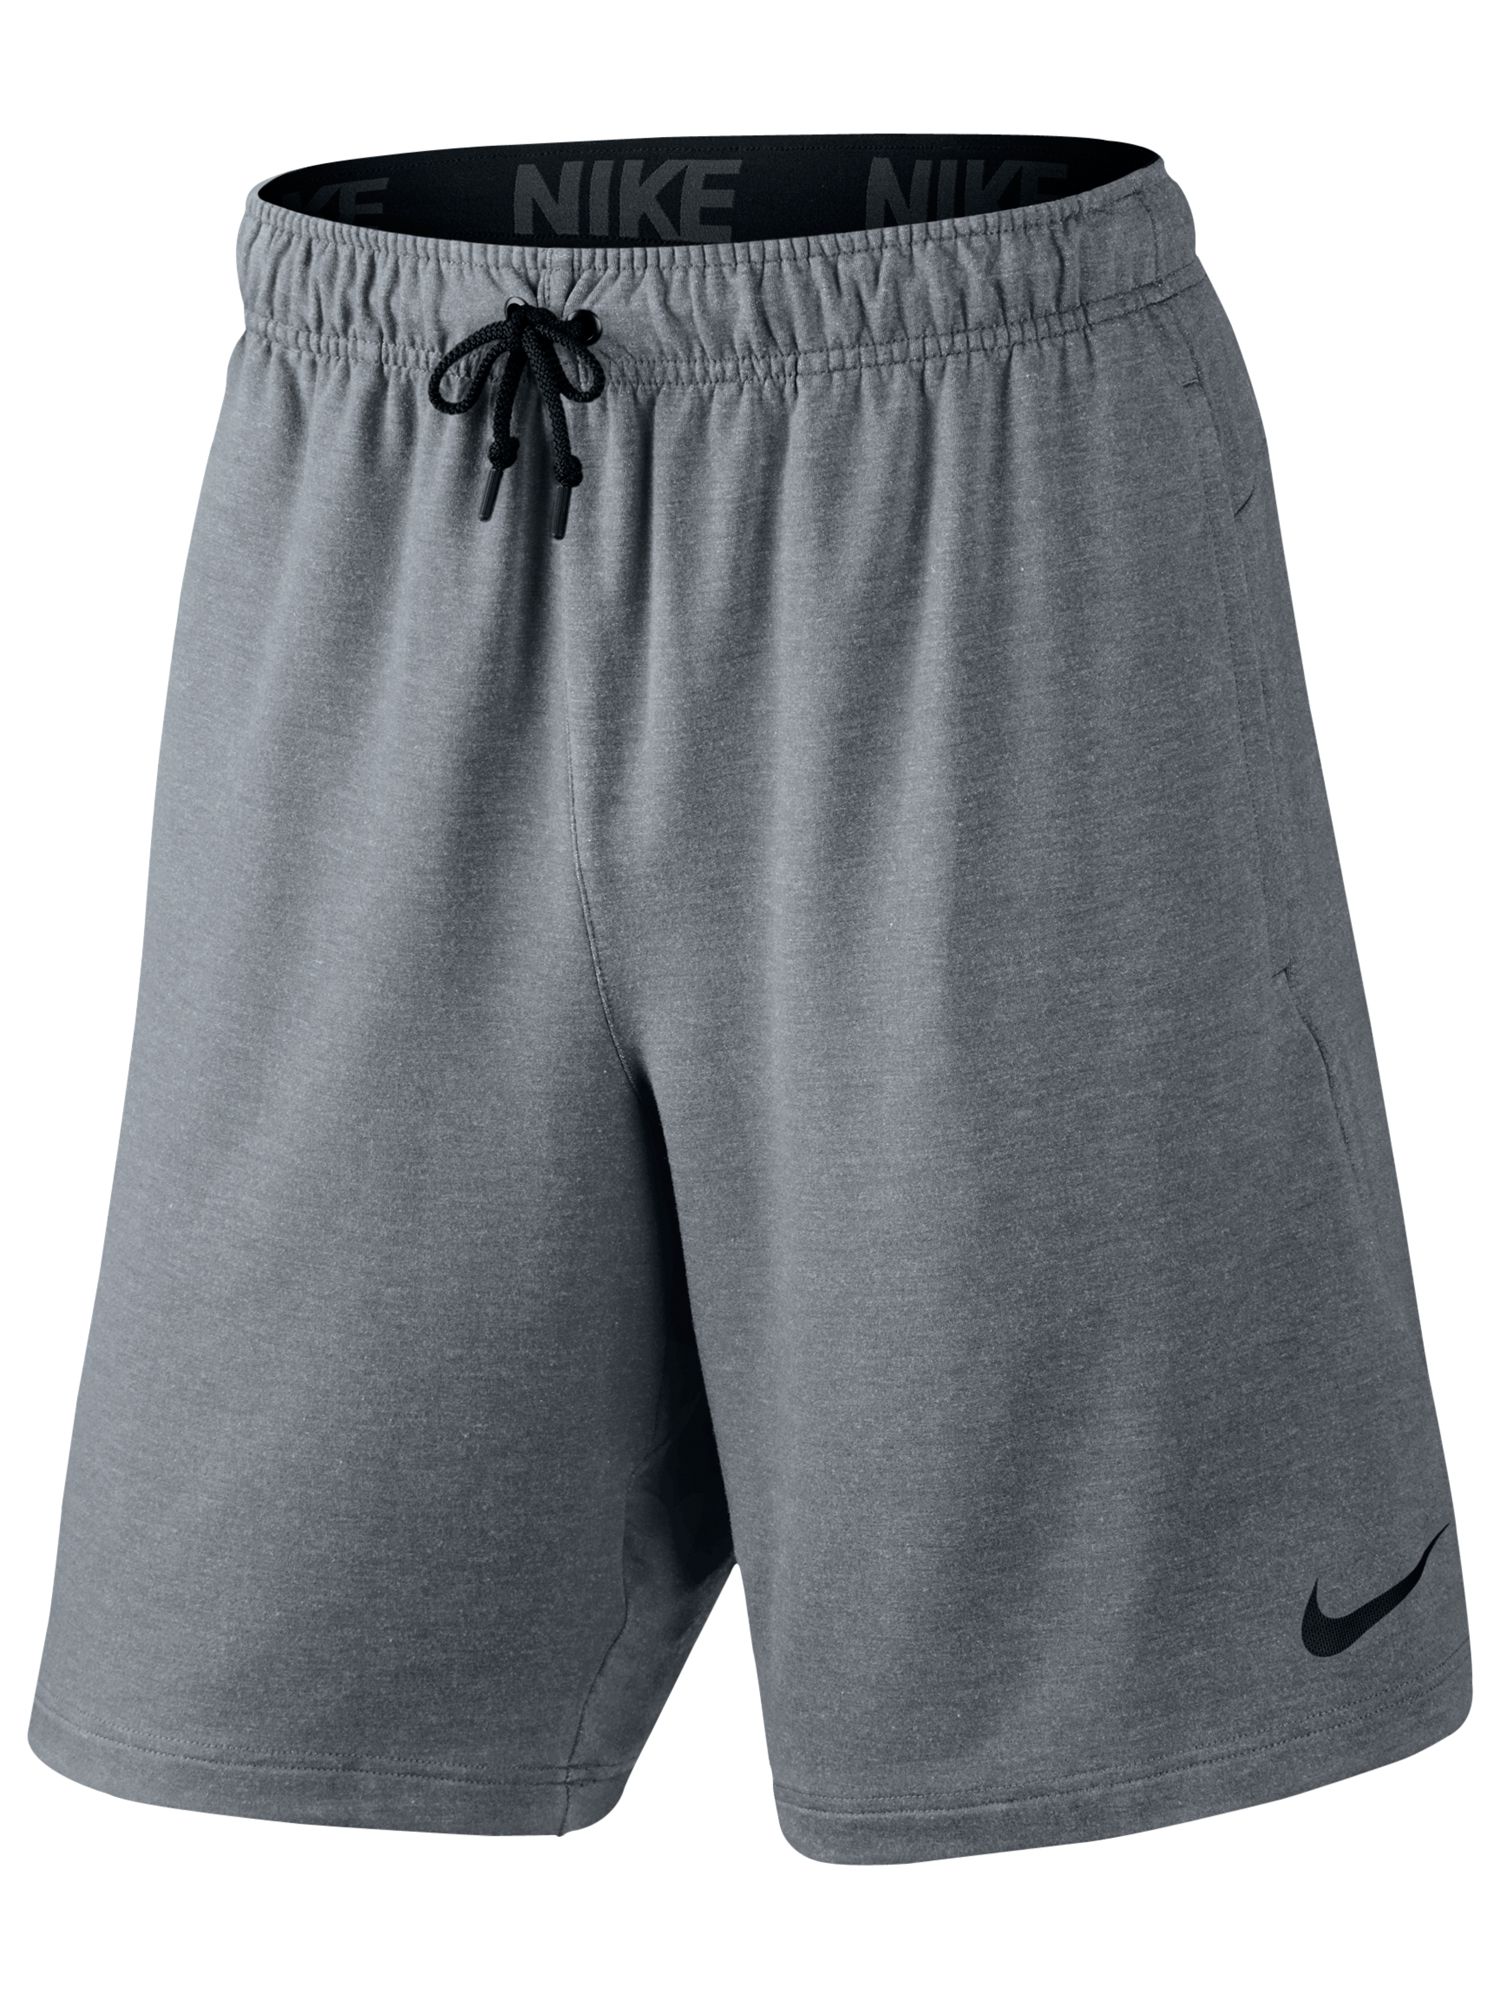 Nike 20.5cm Dri-FIT Fleece Training Shorts, Cool Grey at John Lewis ...